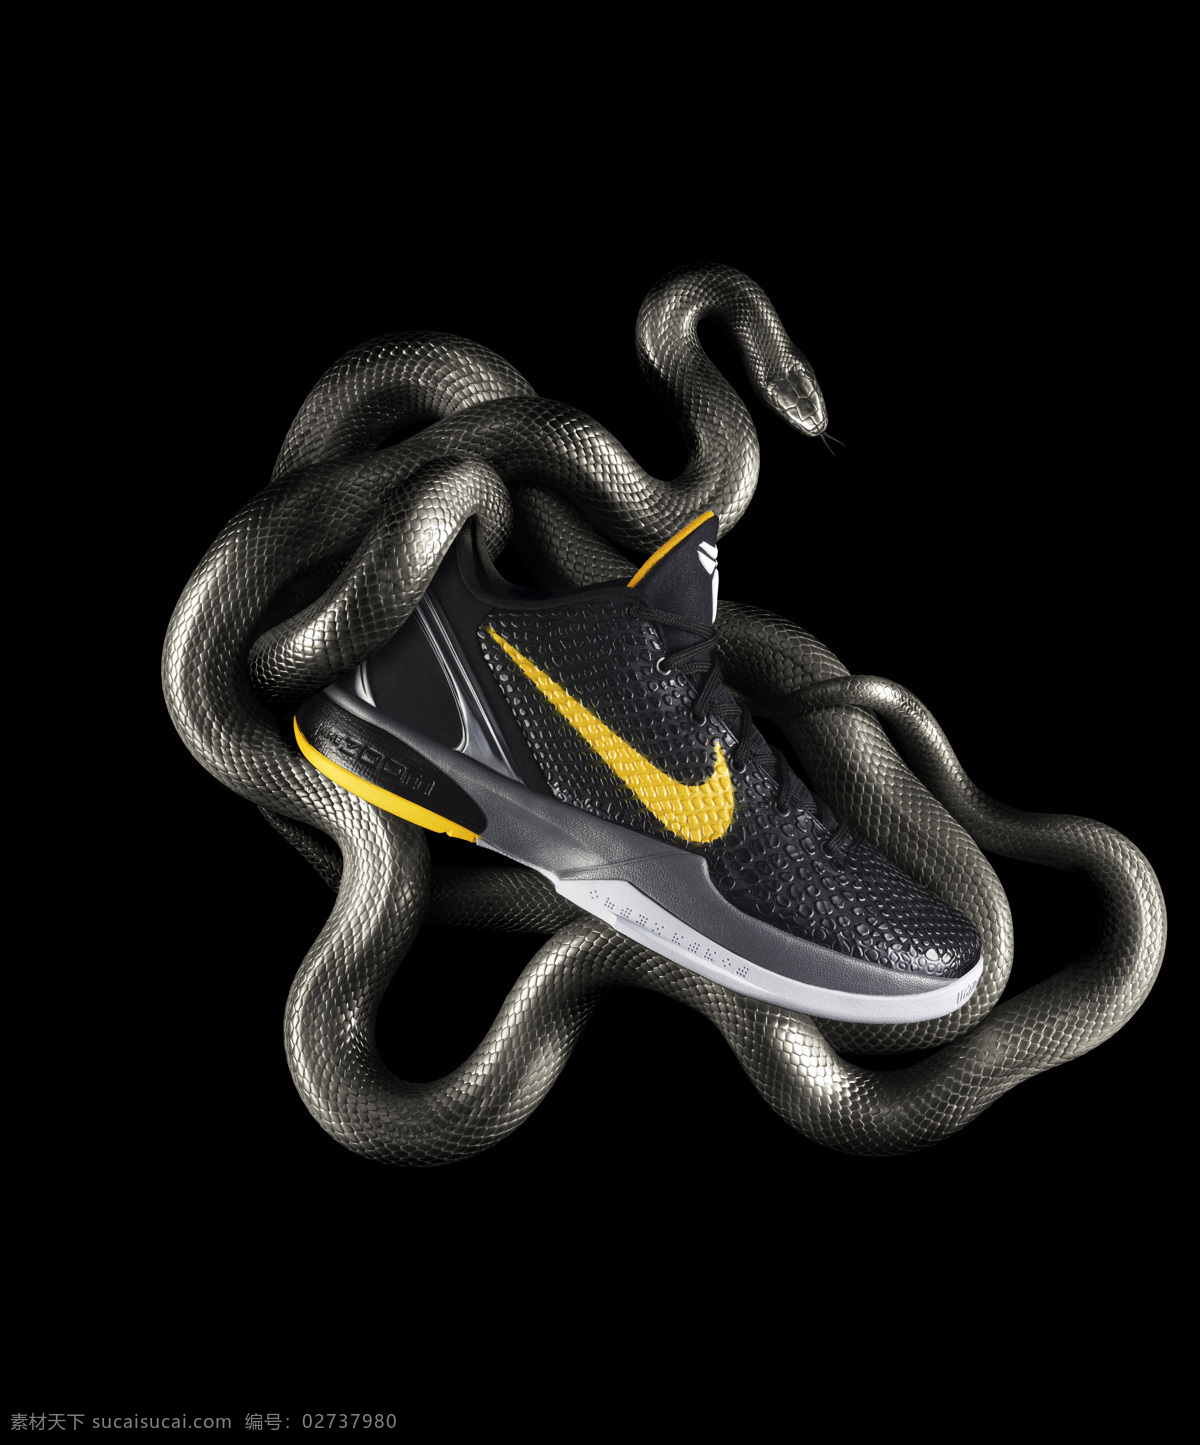 耐克 招贴设计 最新 篮球 鞋 广告宣传 原始 图 设计素材 模板下载 篮球鞋广告 原始图 psd源文件